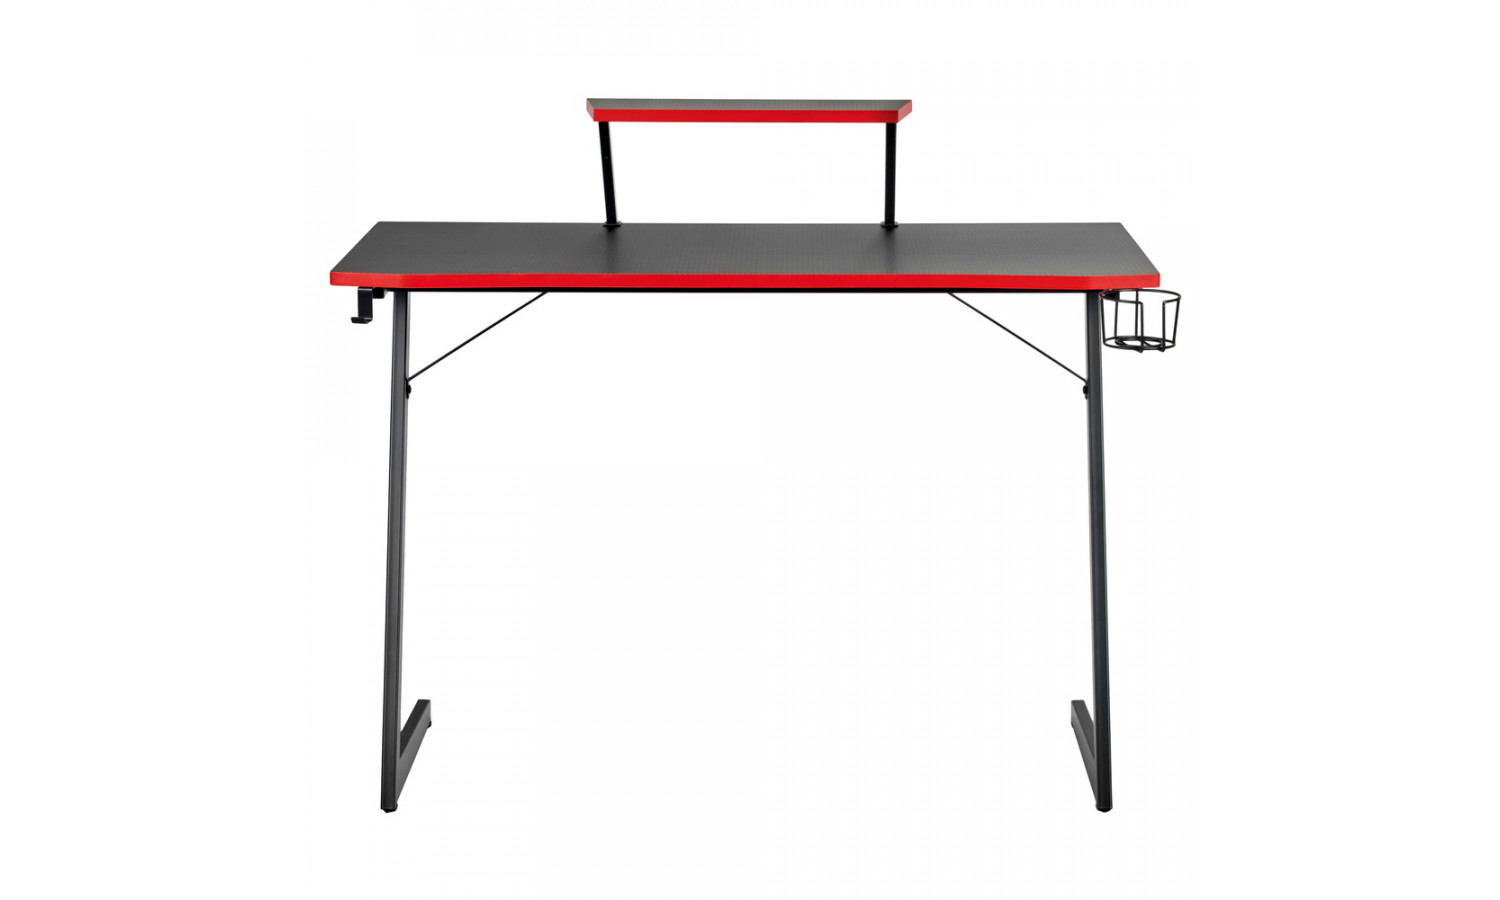 Компьютерный геймерский стол Basic 110х59х75см c полкой для монитора 40х20см, подстаканником, крючком для наушников, карбон чёрный красный